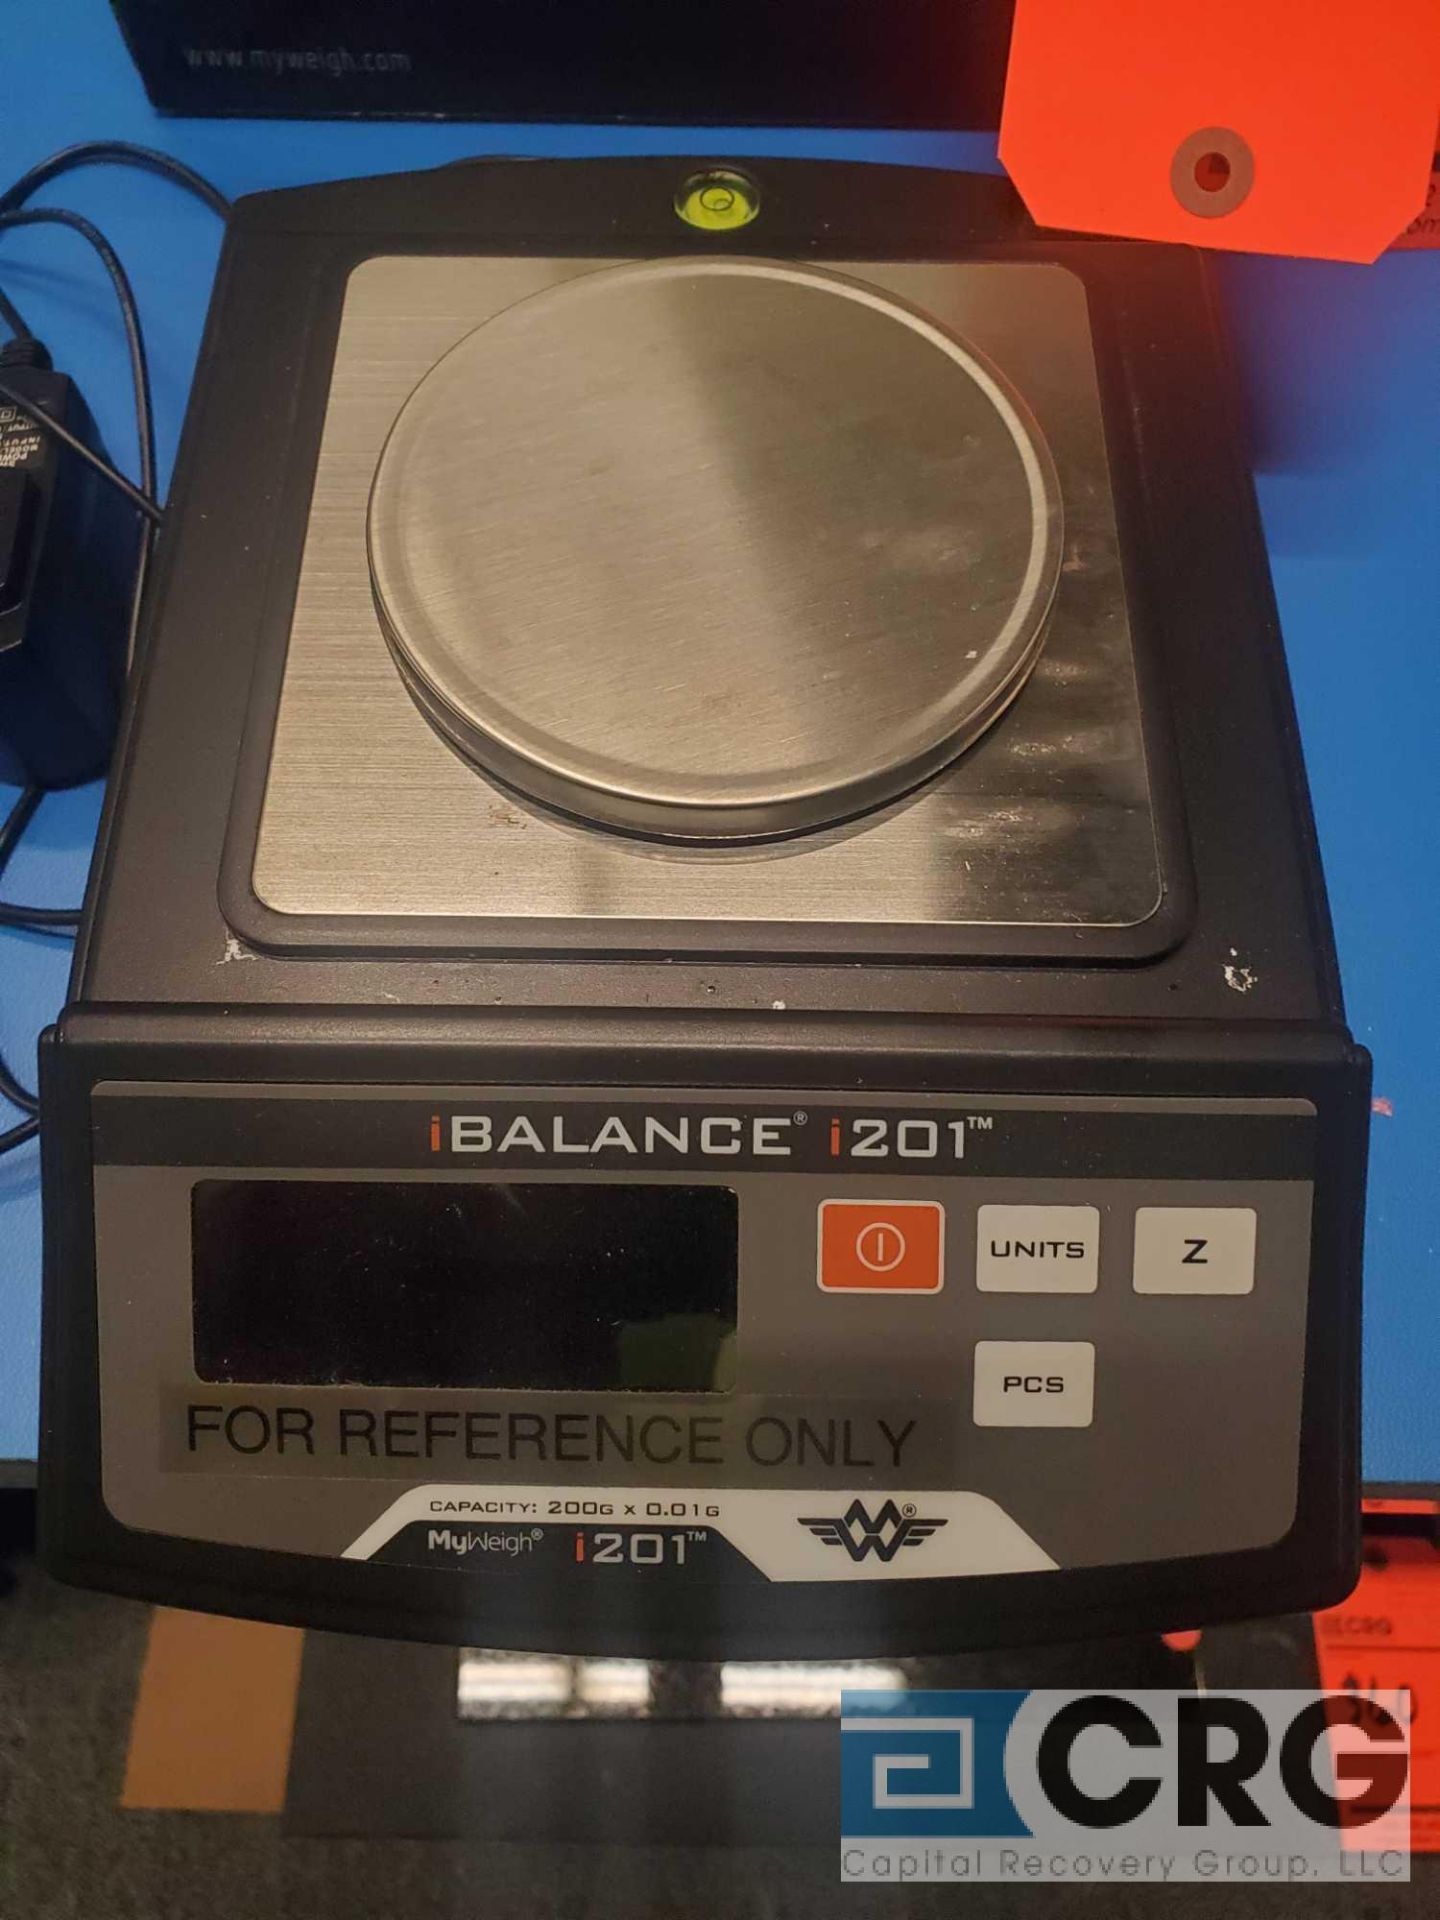 I-Balance I-201 200g capacity high precision scale